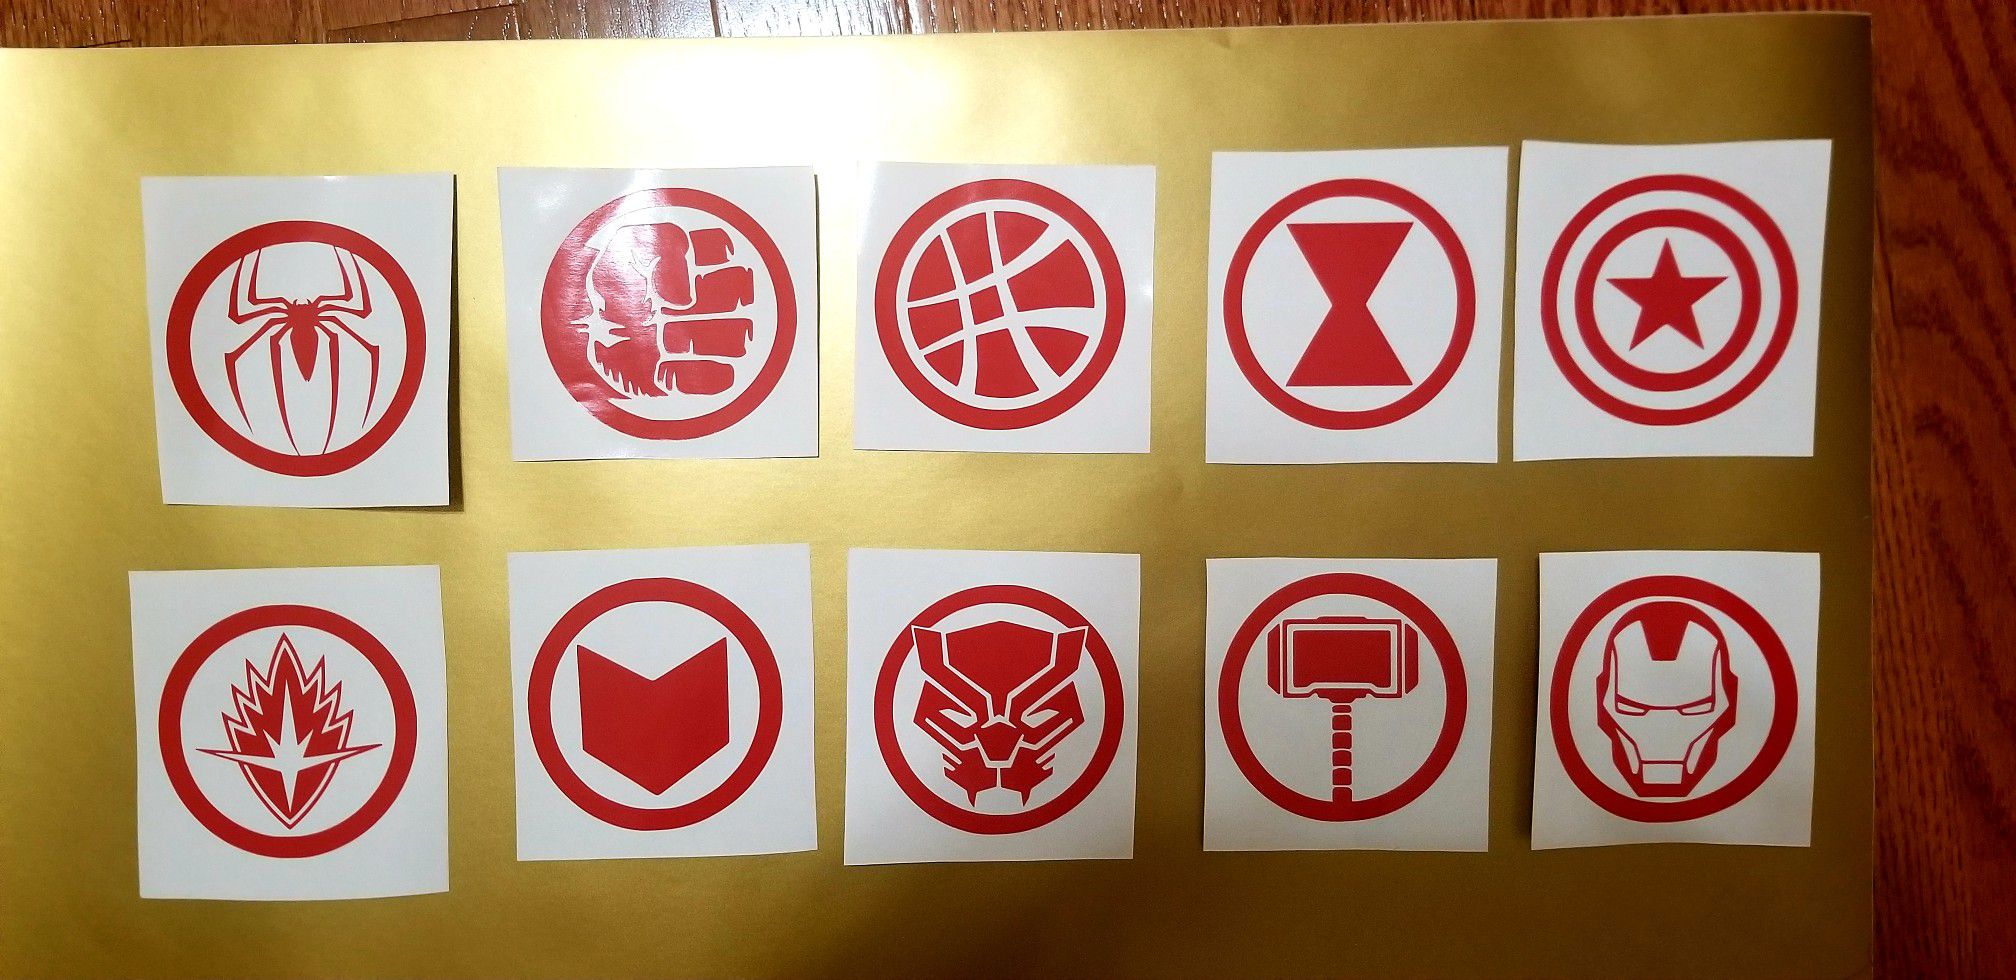 3in per marvel avengers vinyl decals(10 total) for cars,trucks,laptops